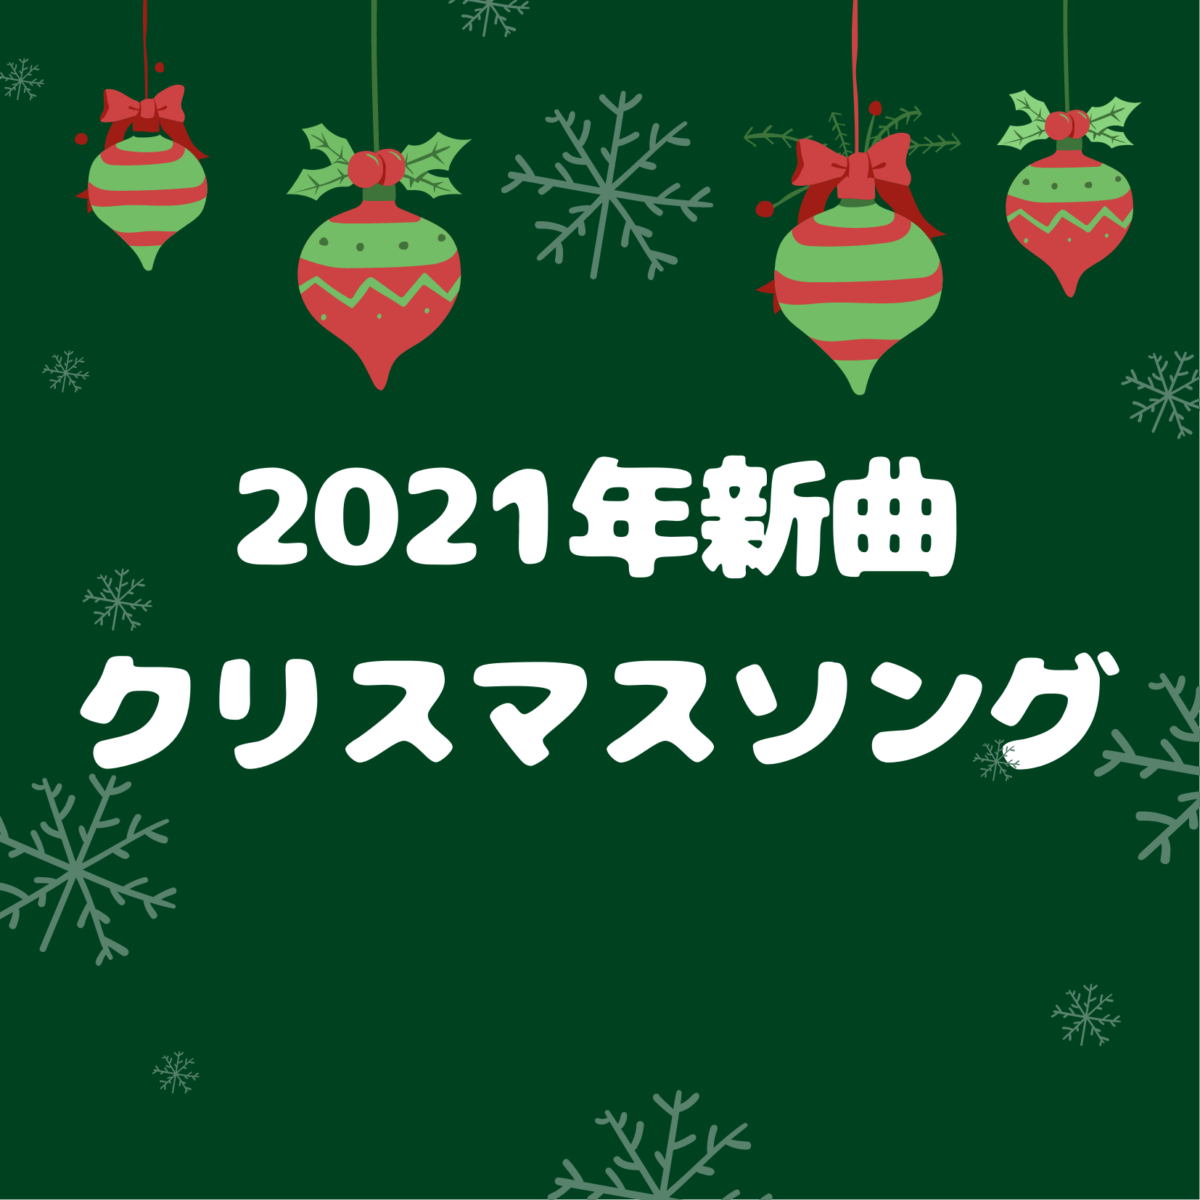 21年 最新クリスマスソングおすすめ邦楽cd10選 21年に発売された新曲クリスマスソングをまとめました Mya Music